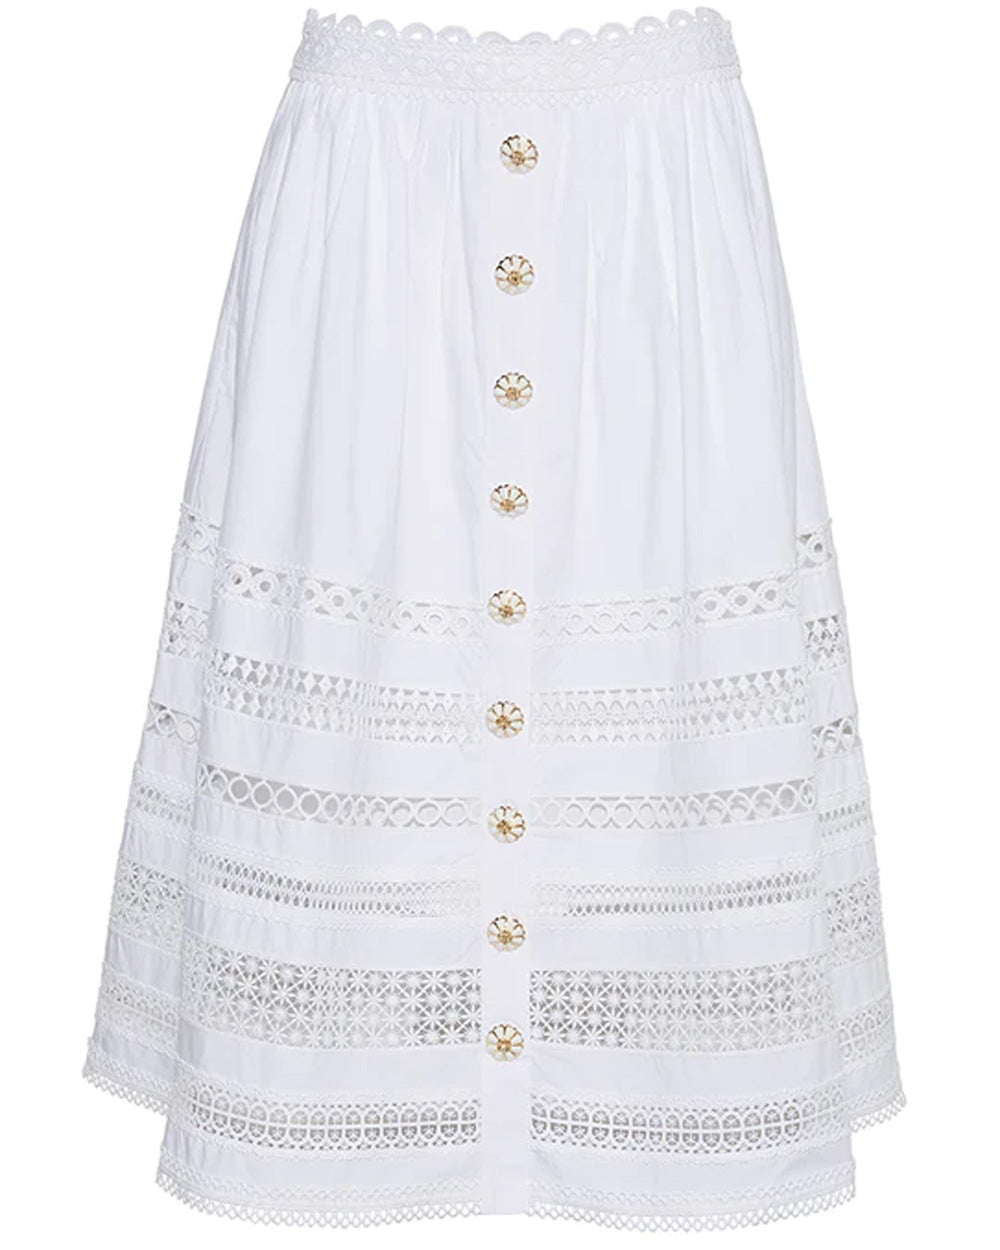 White Finn Skirt